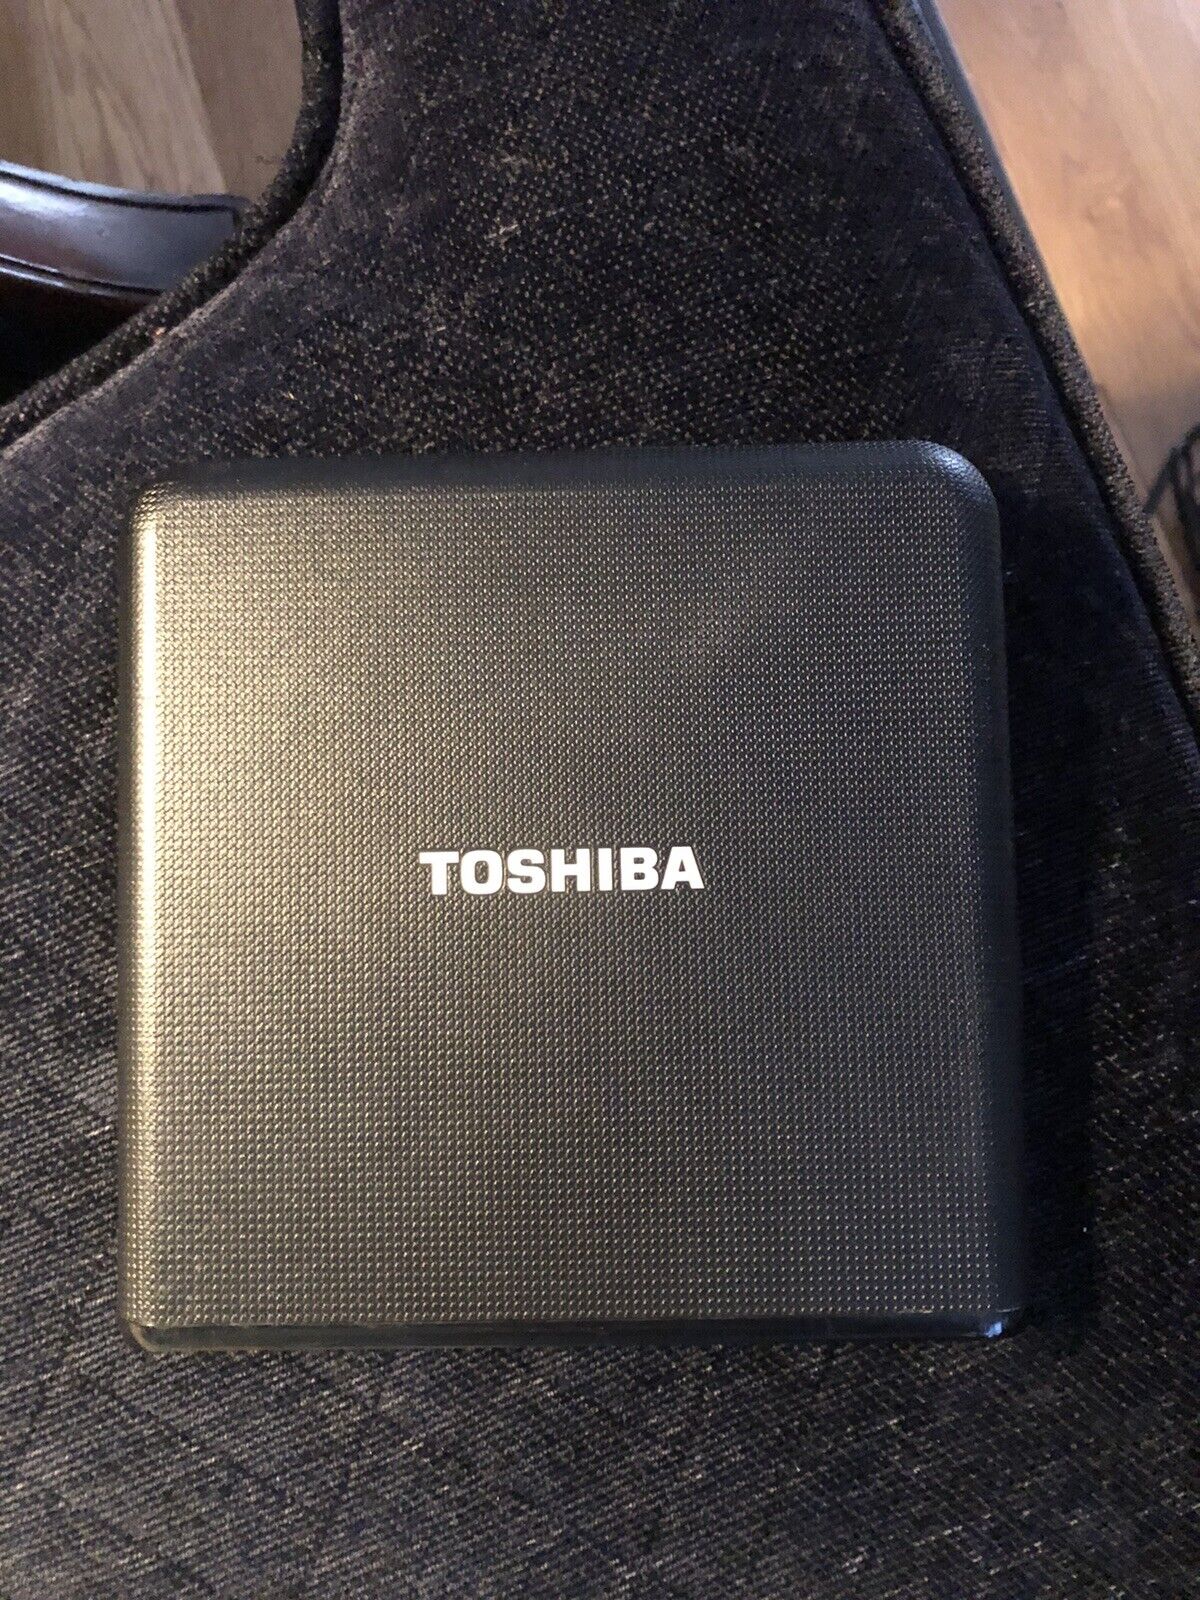 Toshiba Slot-Loading Portable SuperMulti Drive PA3845U-1DV2